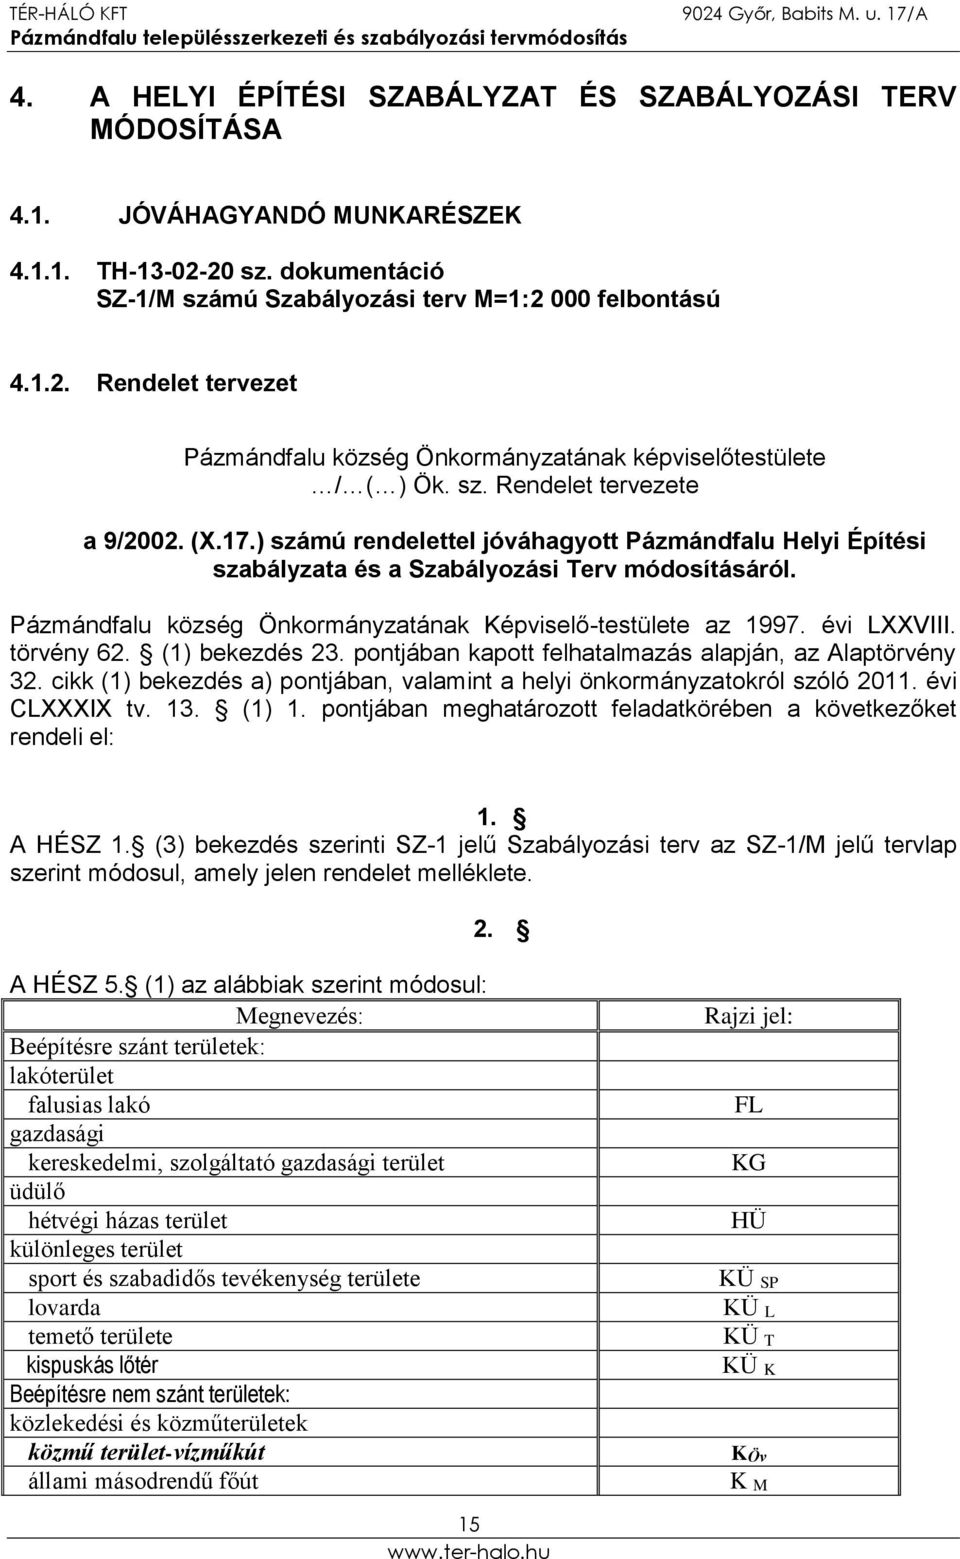 Pázmándfalu község Önkormányzatának Képviselő-testülete az 1997. évi LXXVIII. törvény 62. (1) bekezdés 23. pontjában kapott felhatalmazás alapján, az Alaptörvény 32.